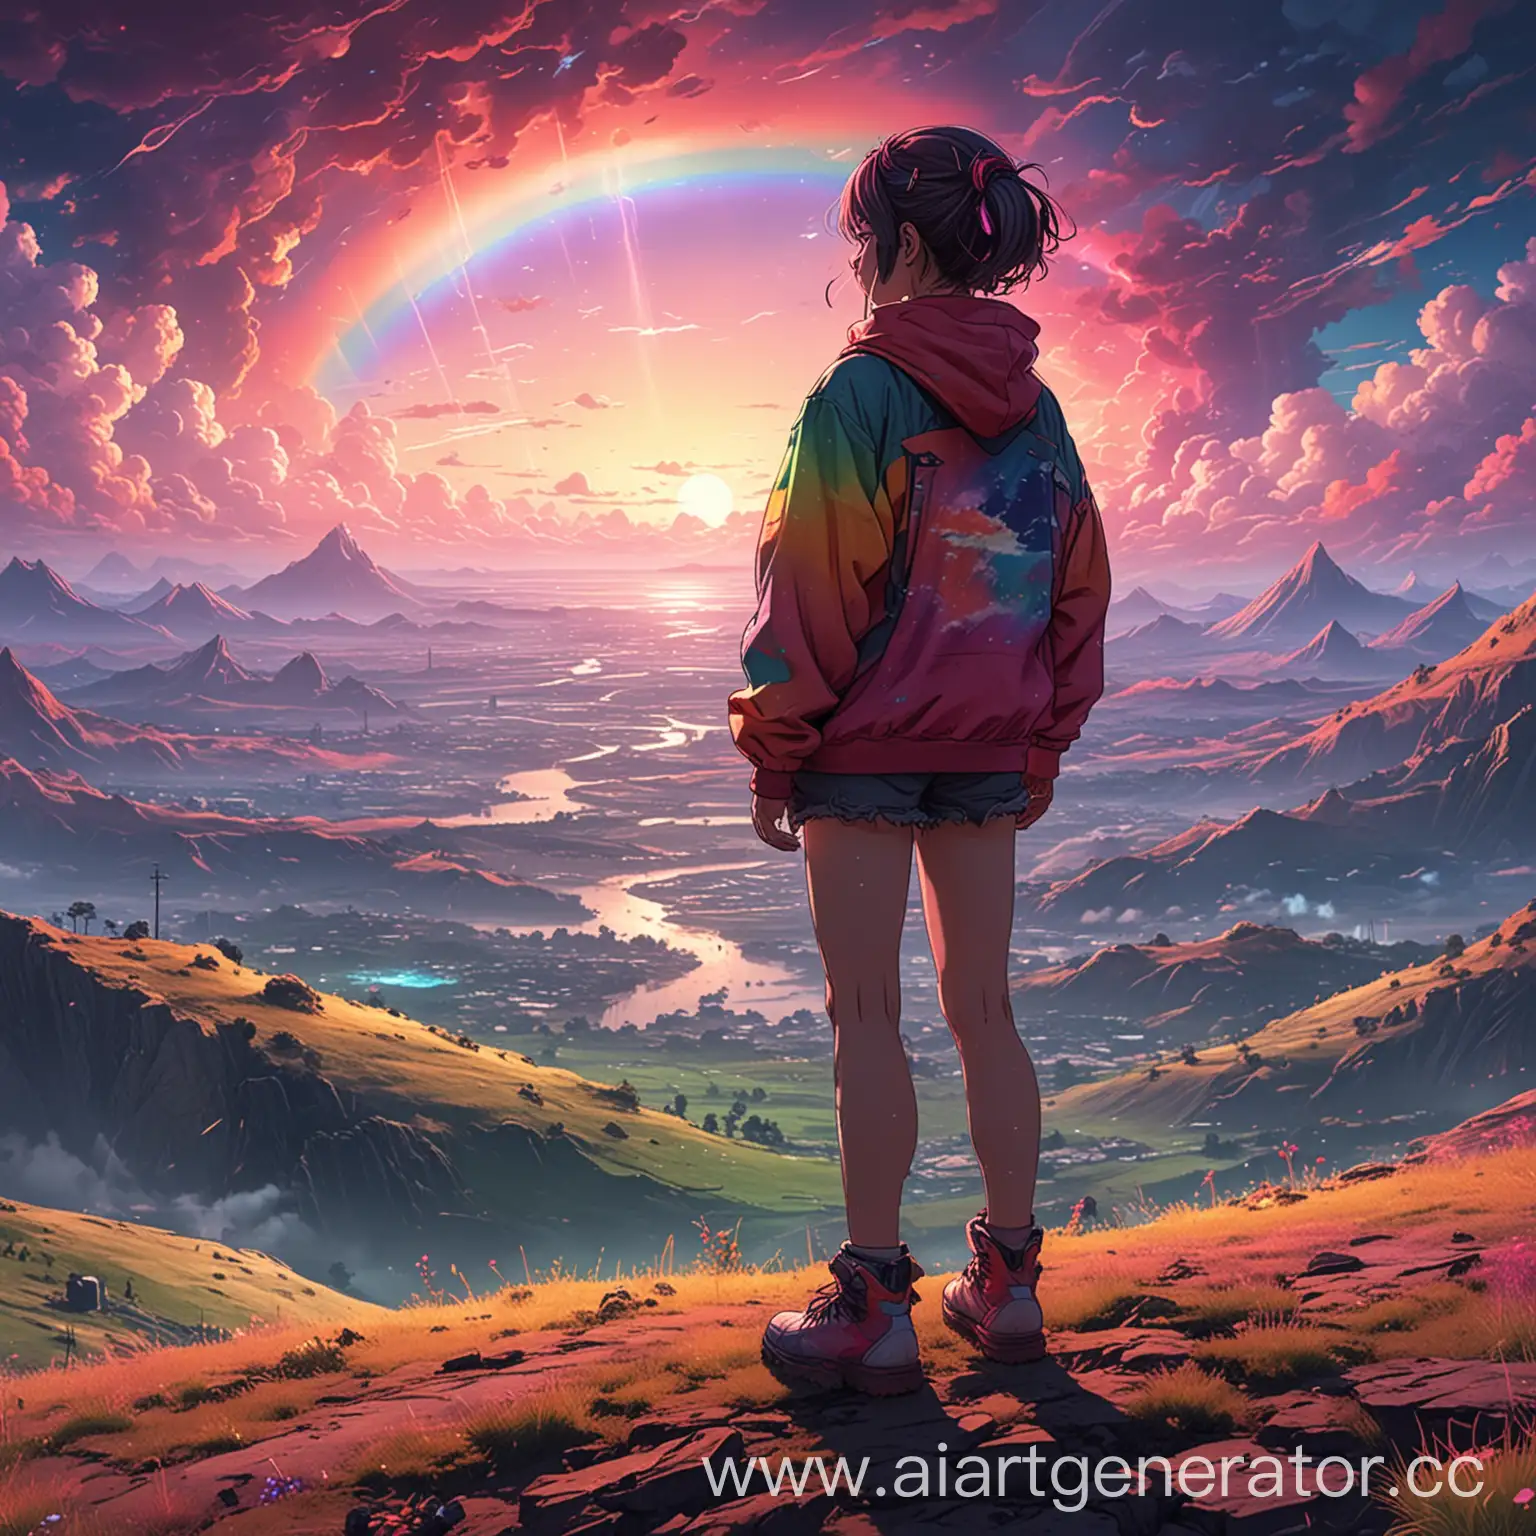 Изображение аниме-персонажа, стоящего на вершине холма с видом на сюрреалистический пейзаж. Небо заполнено неоновыми облаками и радугами, а земля искажена и дезориентирует. Персонаж одет в яркую, разноцветную одежду и кажется потерянным и дезориентированным